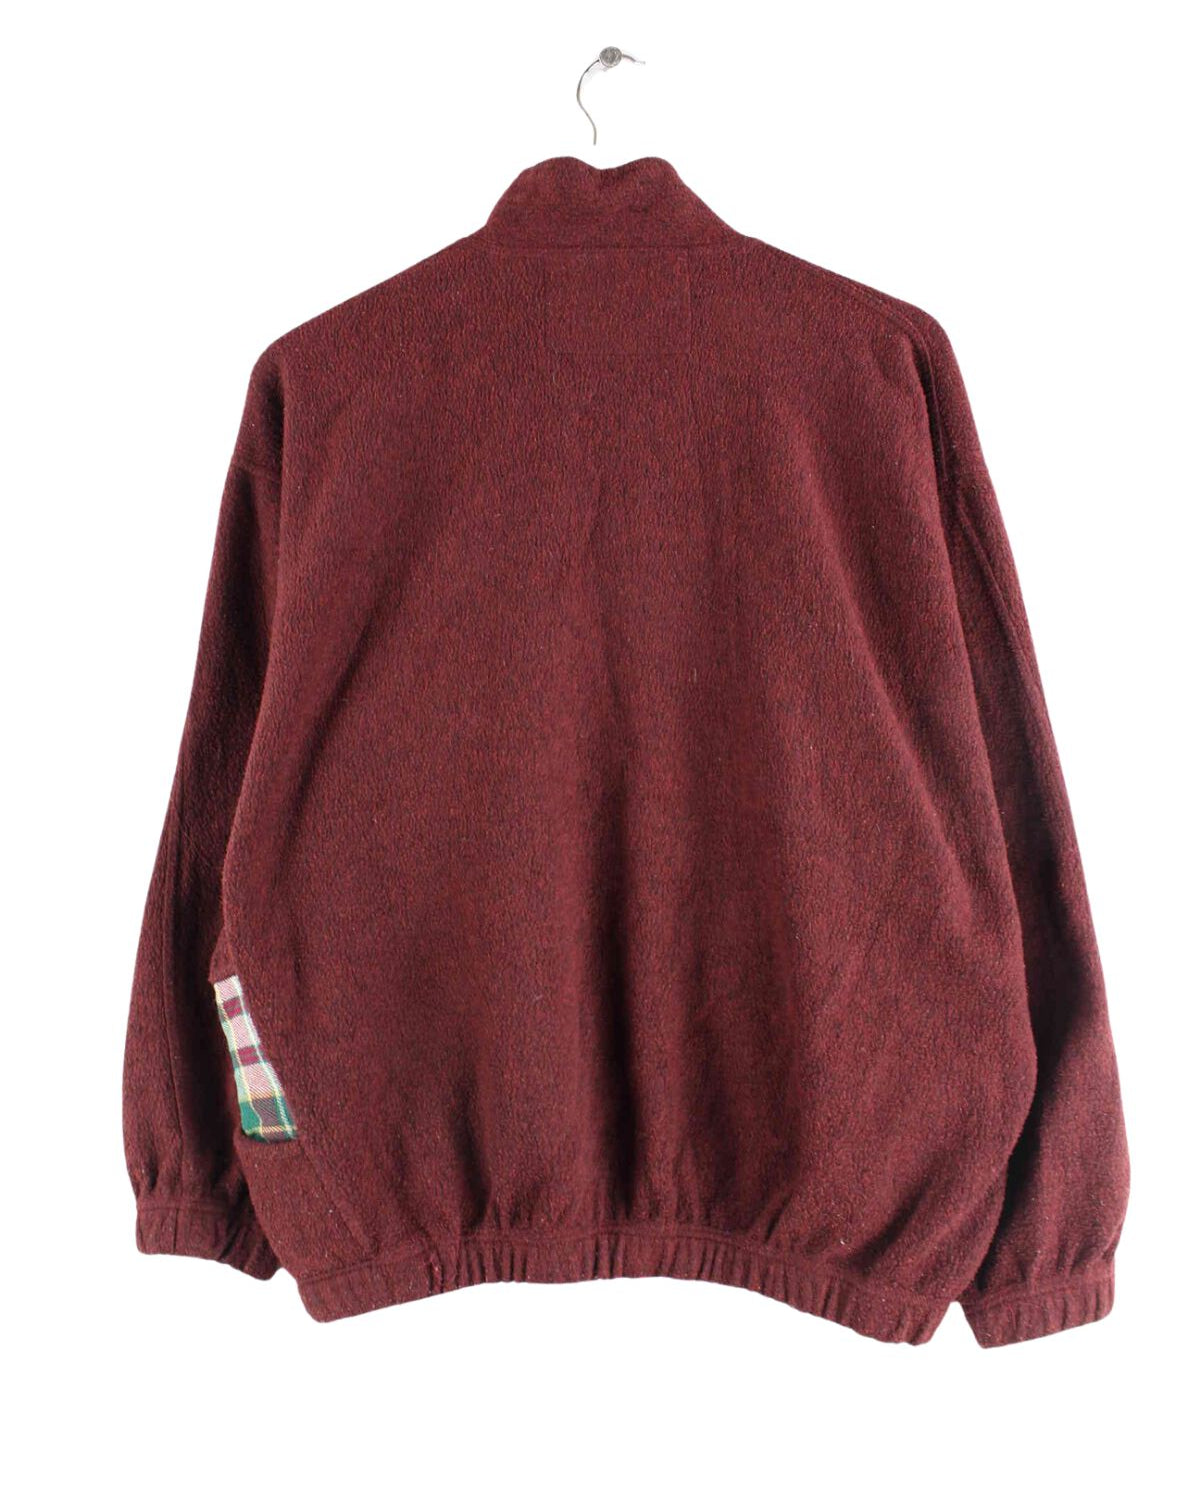 Vintage 90s Fleece Half Zip Sweater Rot S (back image)